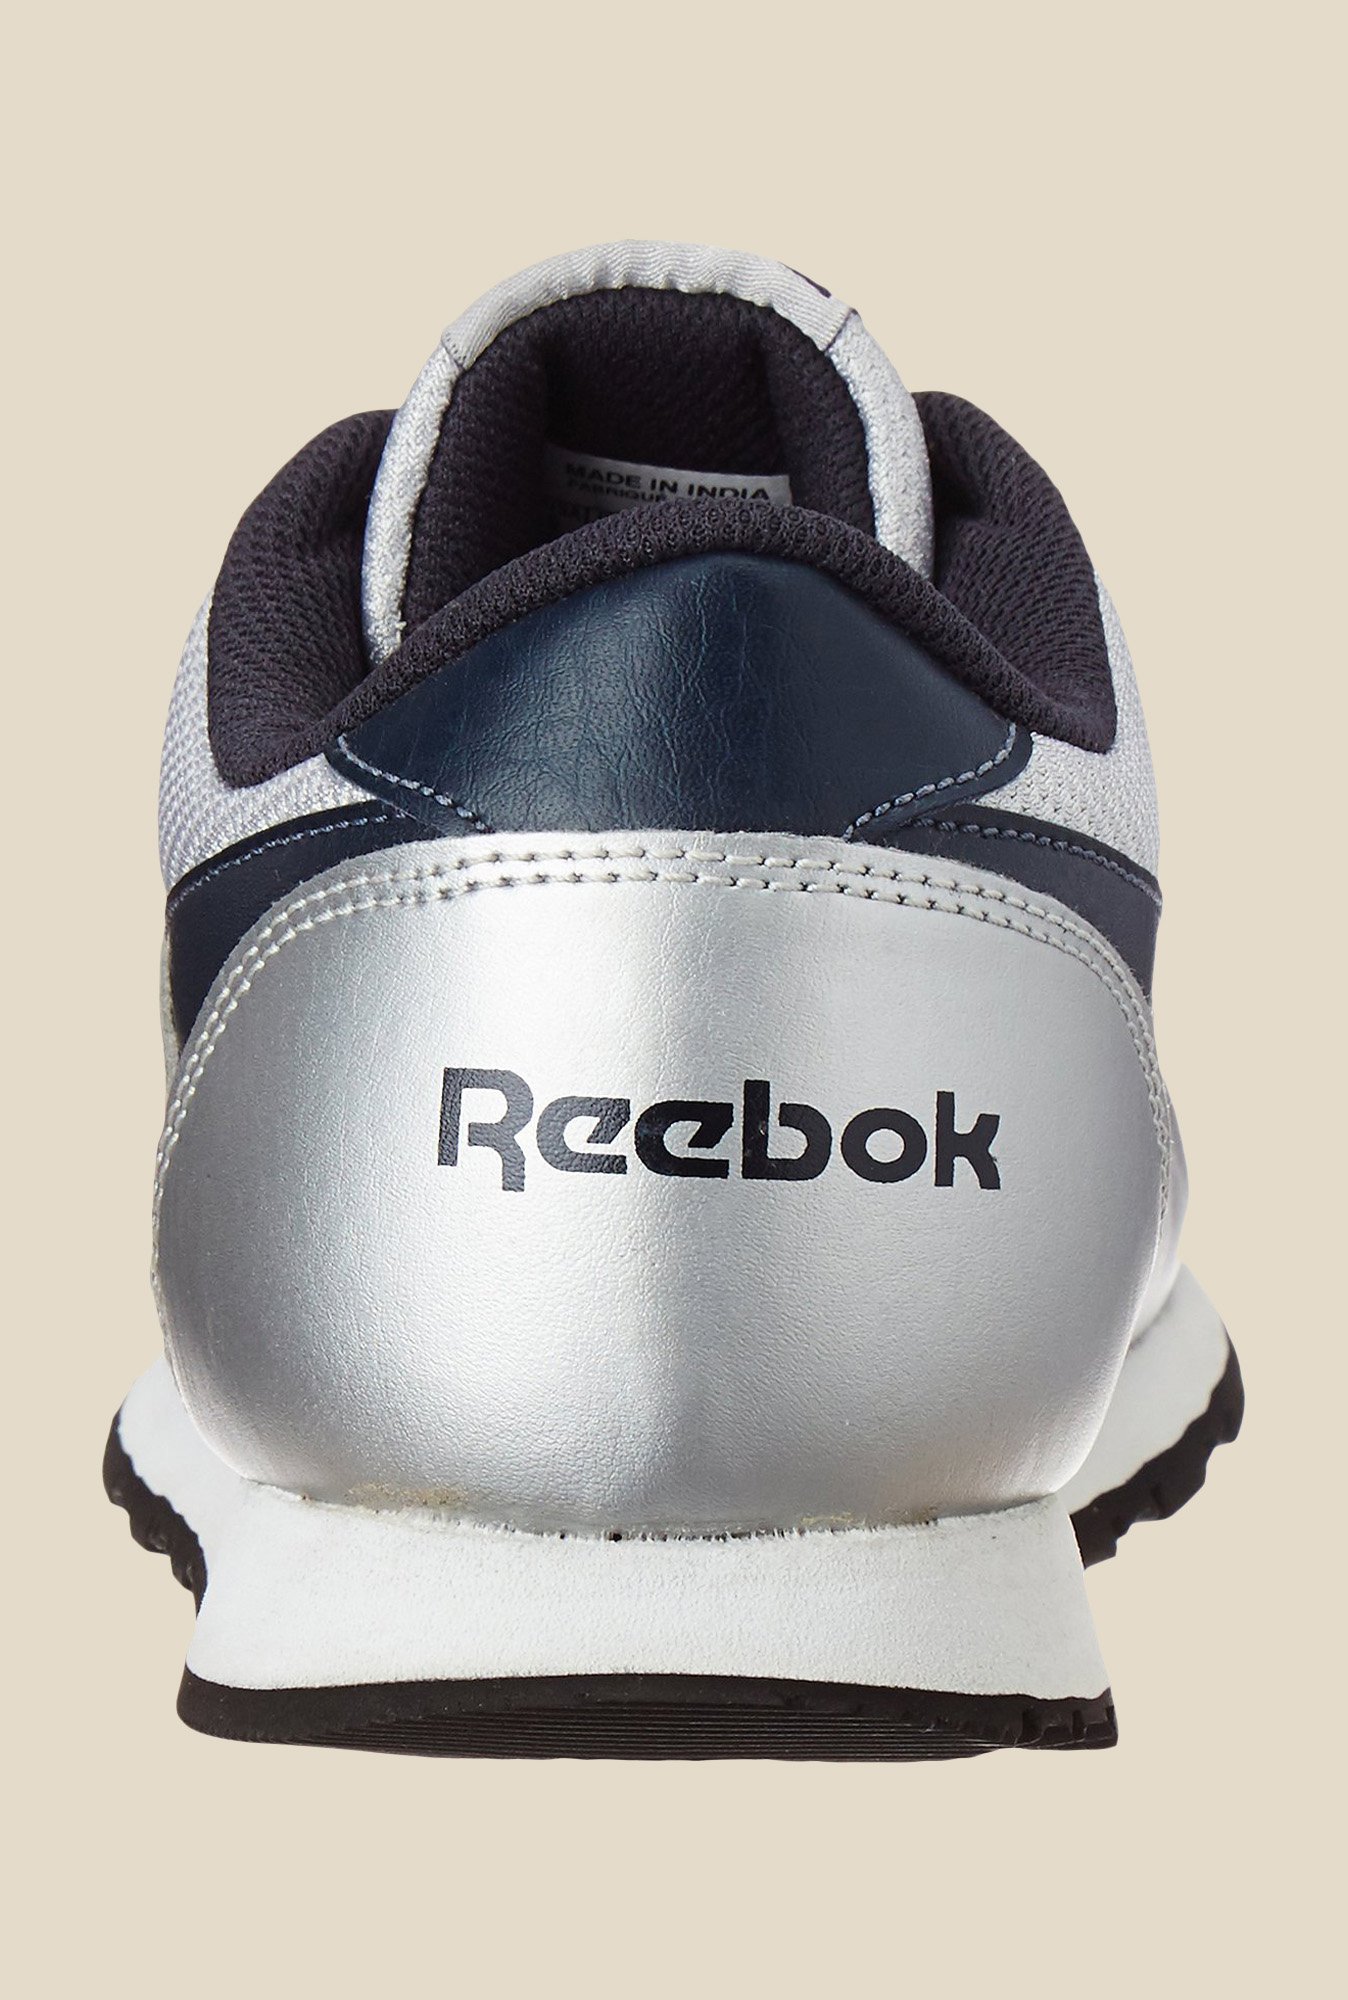 reebok shoes classic proton